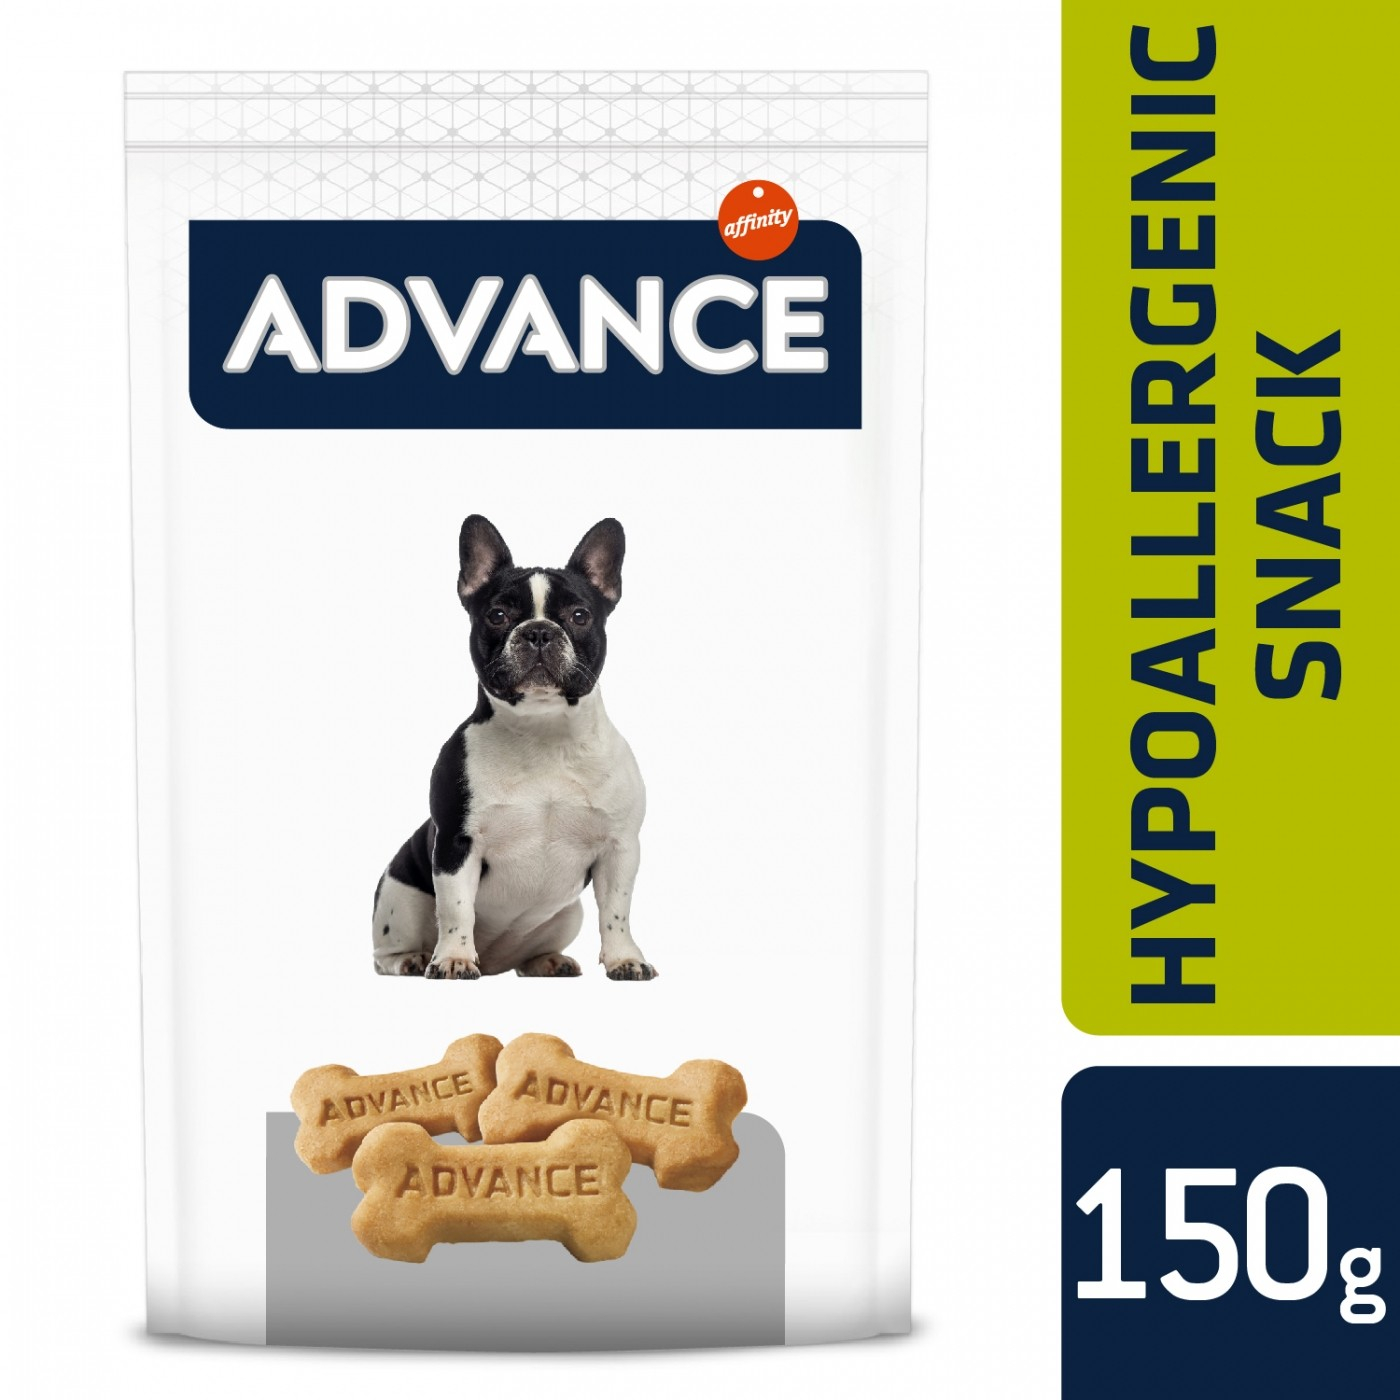 Advance Snack Hypoallergenic para cão